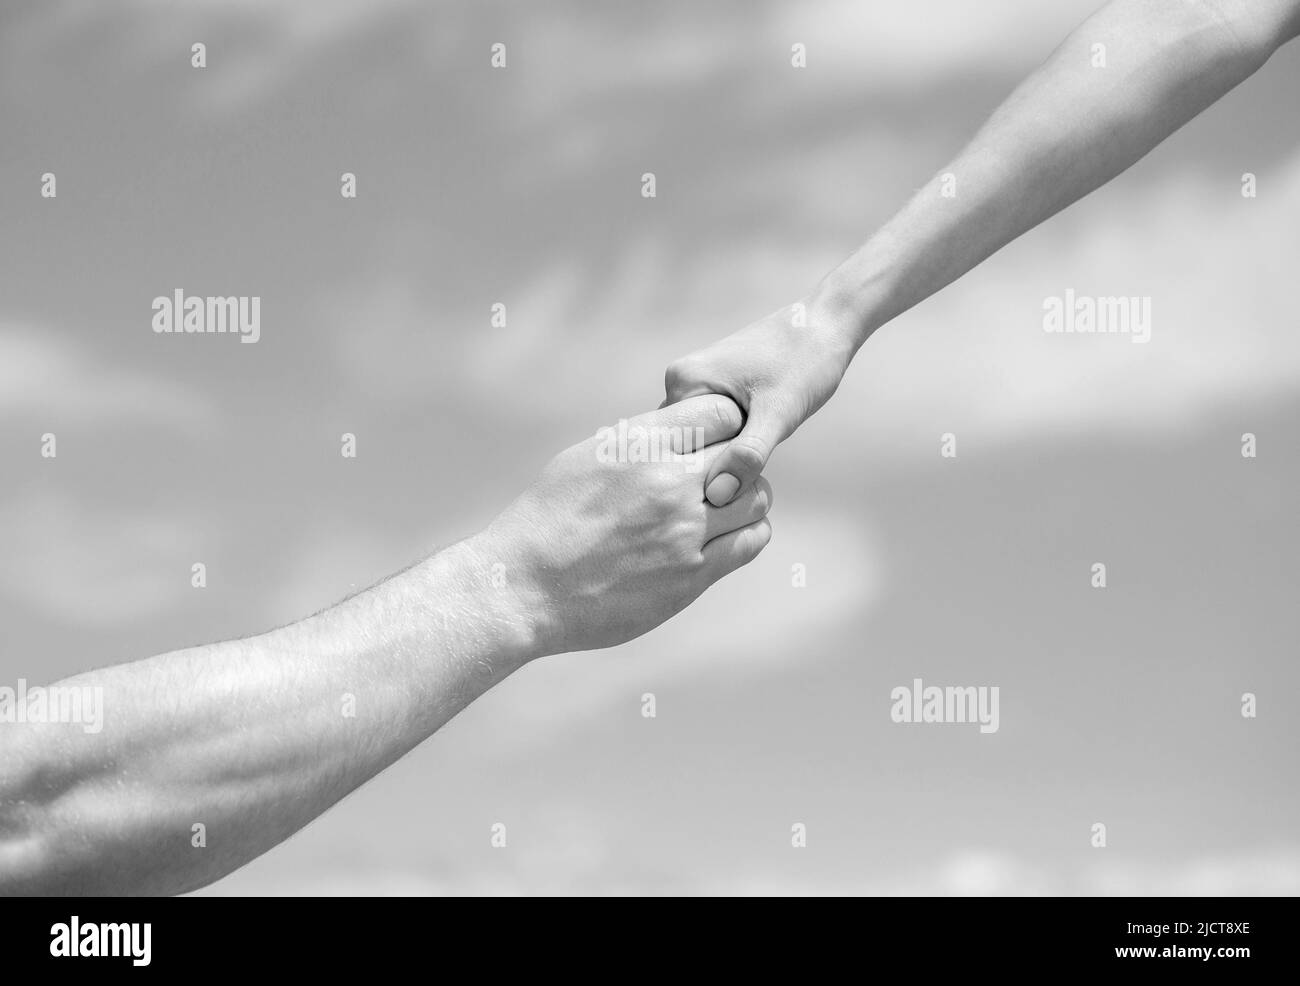 Eine helfende Hand geben. Hände von Mann und Frau, die sich gegenseitig erreichen, unterstützen. Solidarität, Mitgefühl und Nächstenliebe, Rettung. Eine helfende Hand geben Stockfoto